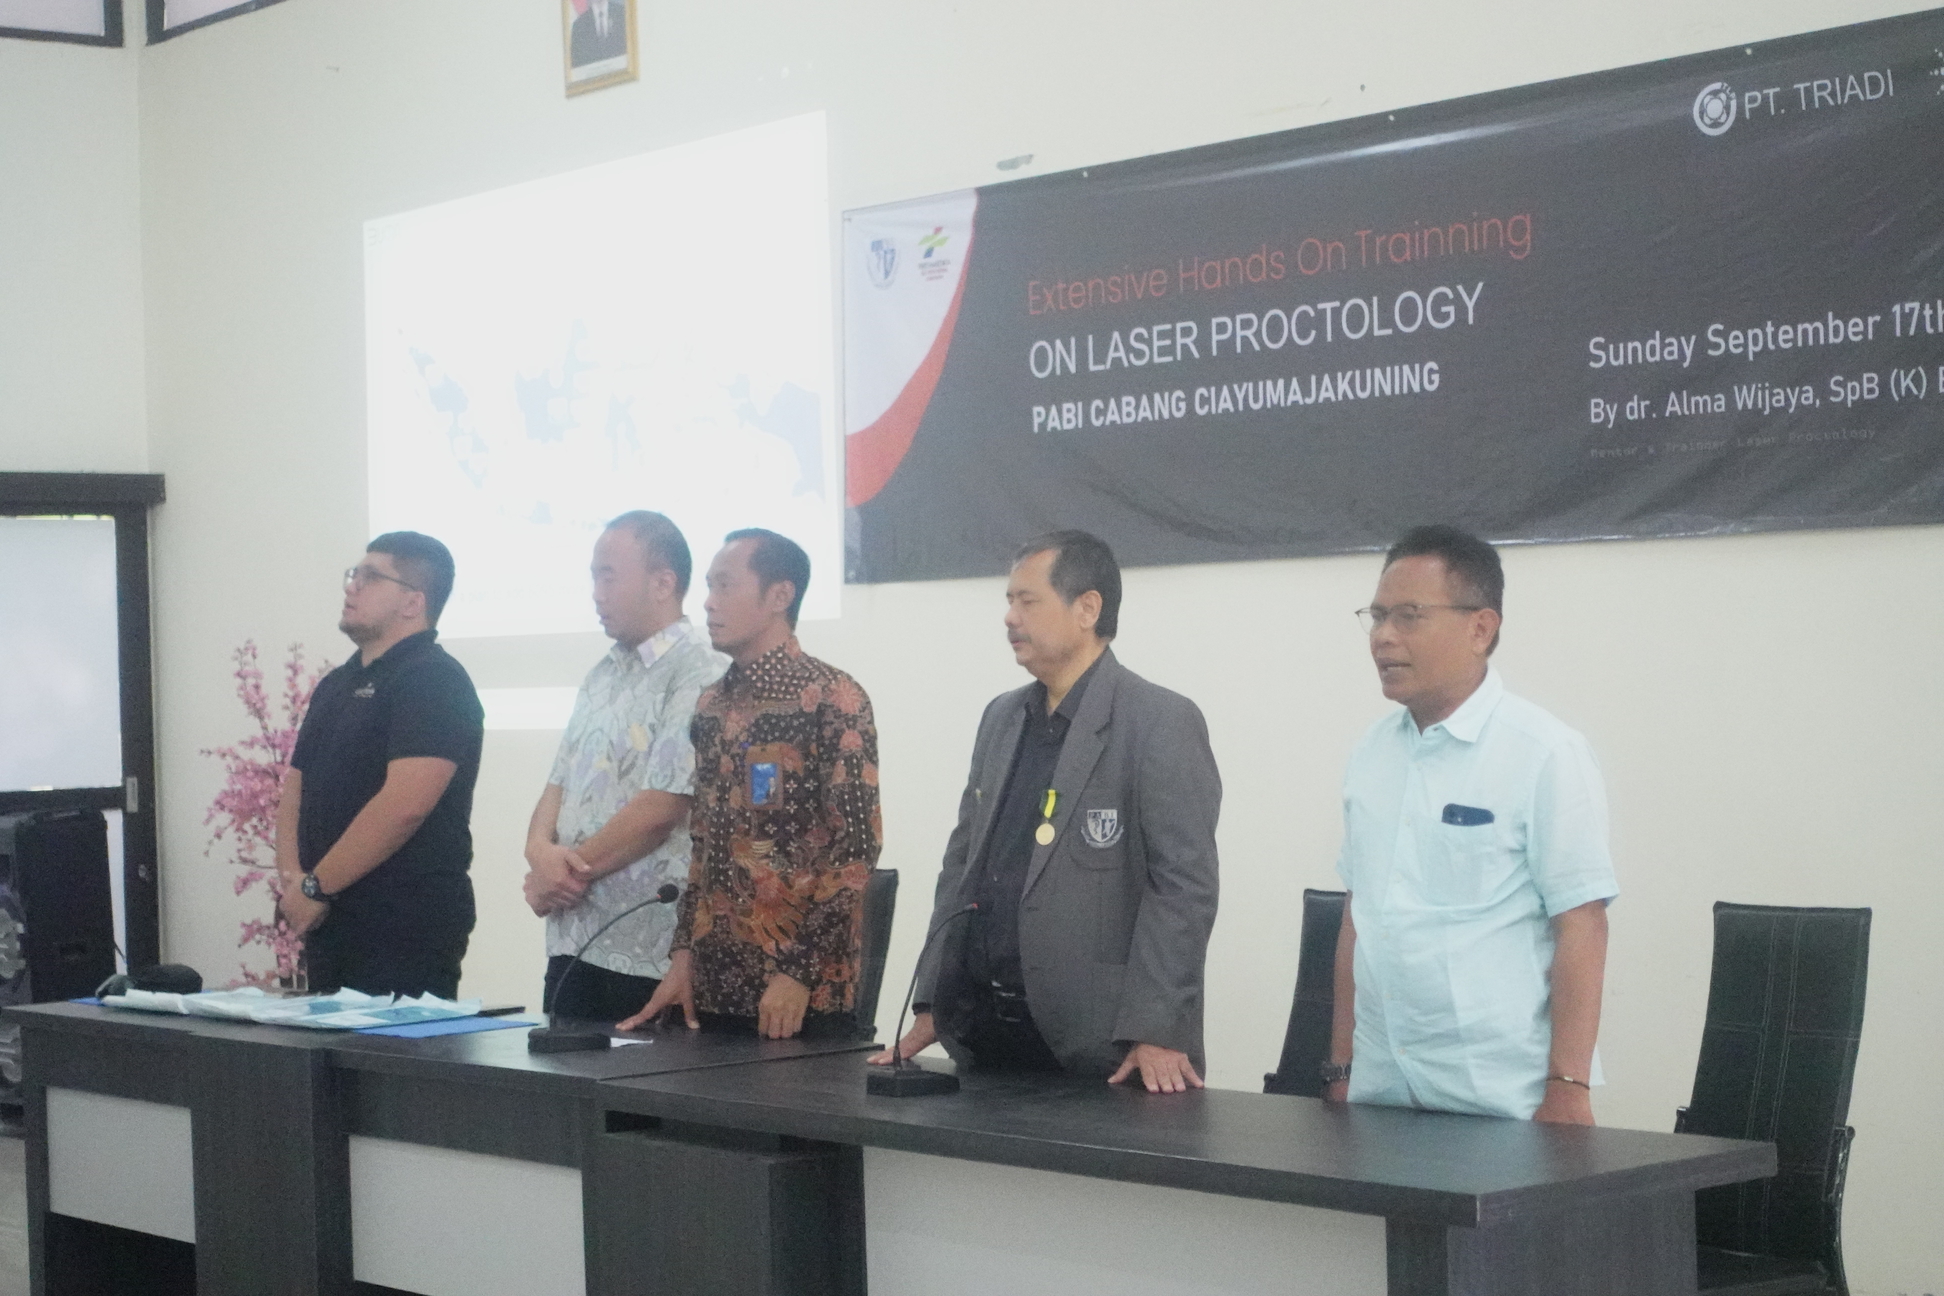 Pelatihan Proctology Laser yang diselenggarakan di RS Pertamina Cirebon Acara tersebut dihadiri Ketua PABI Cabang CIAYUMAJAKUNING